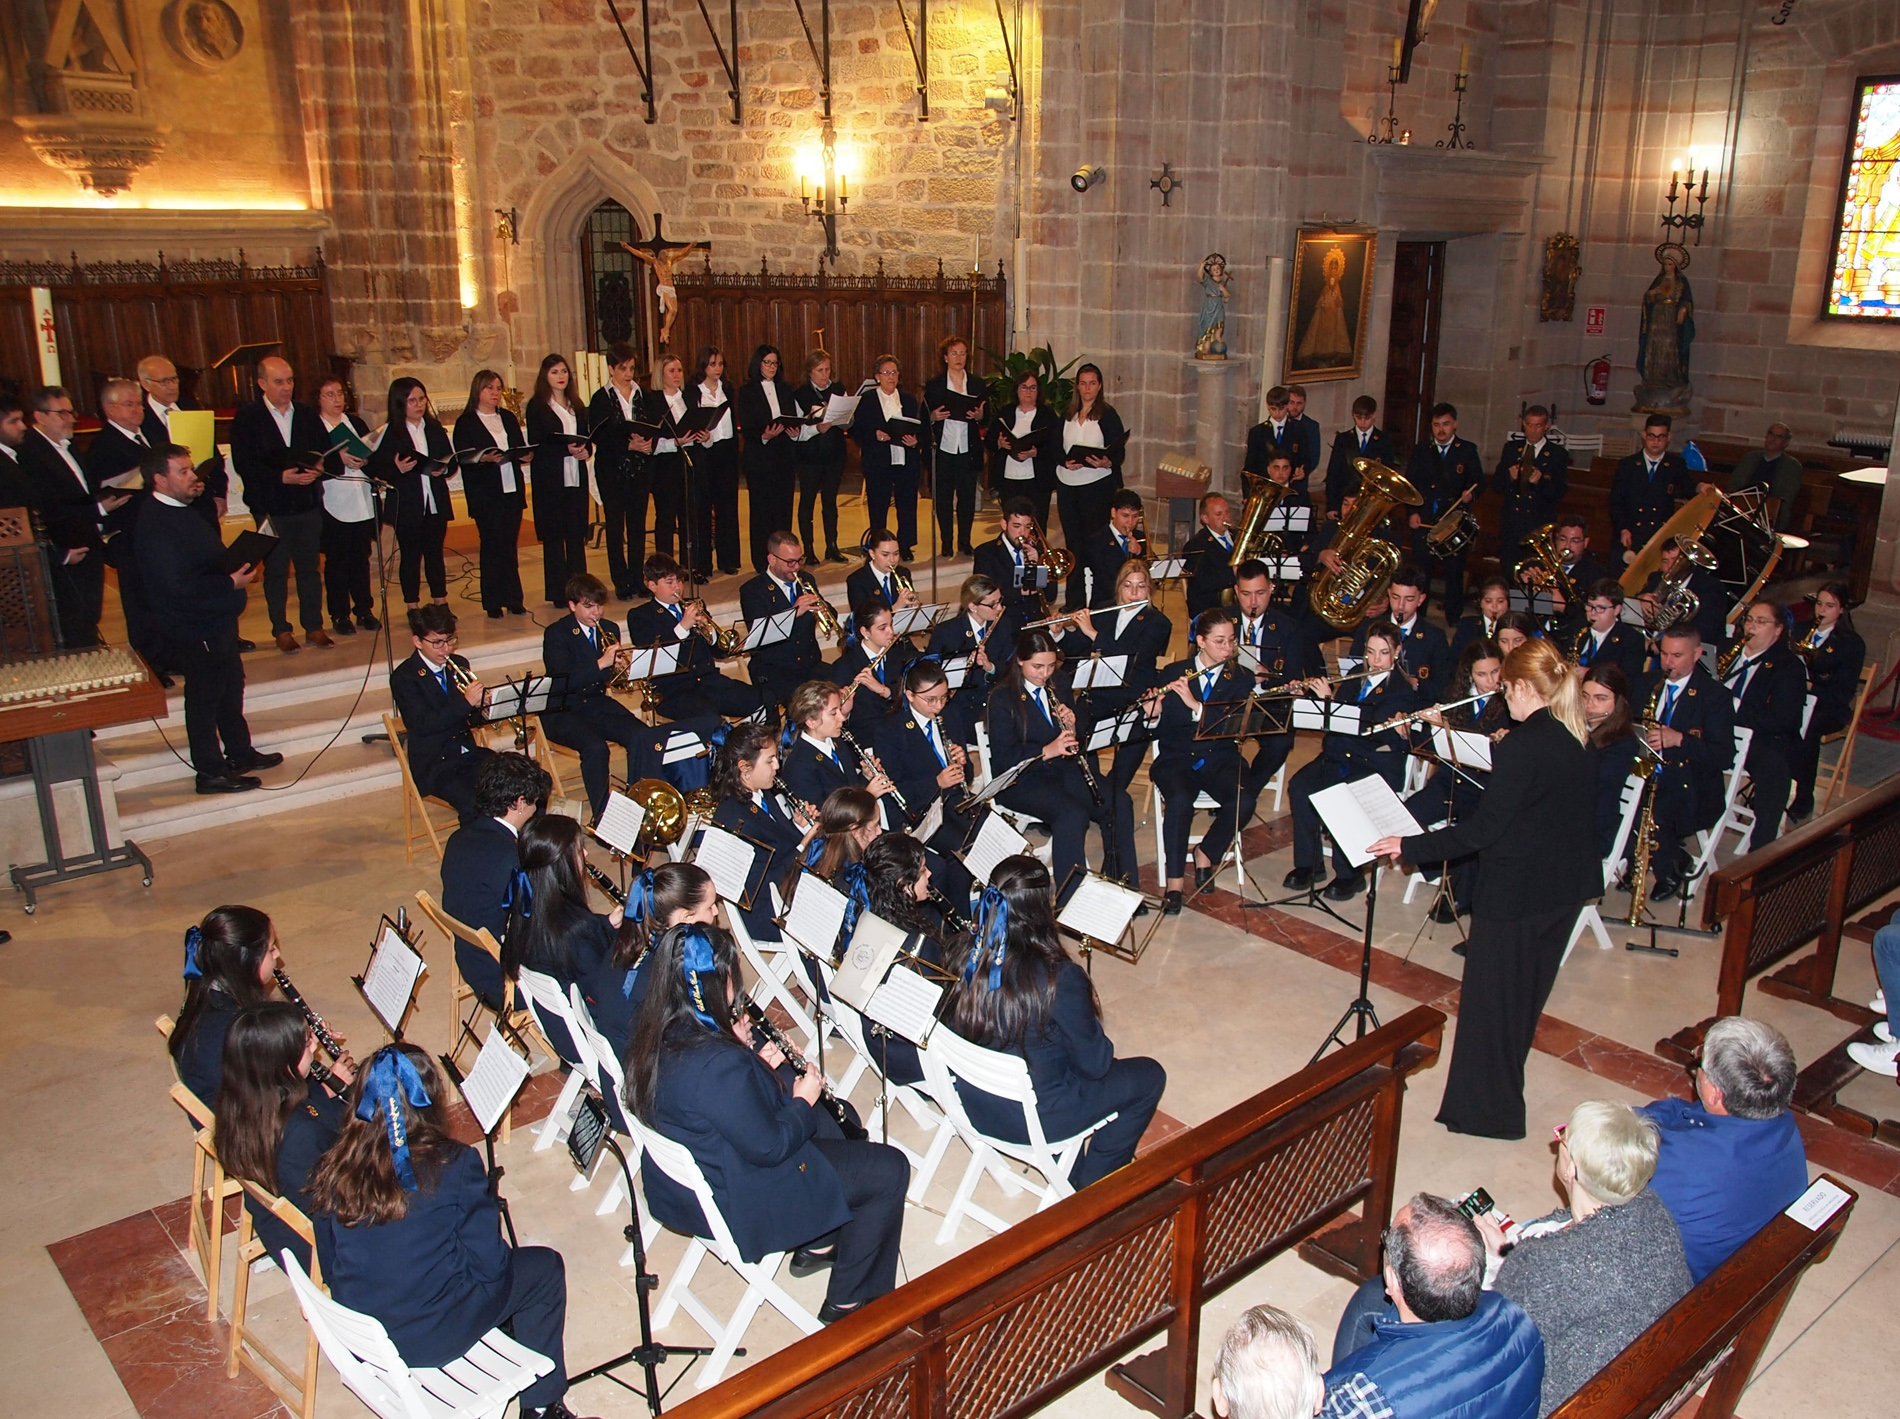 La Agrupación Musical Santa Cecilia celebró su XXXV Aniversario el pasado sábado con un concierto cofrade en compañía del Coro Parroquia